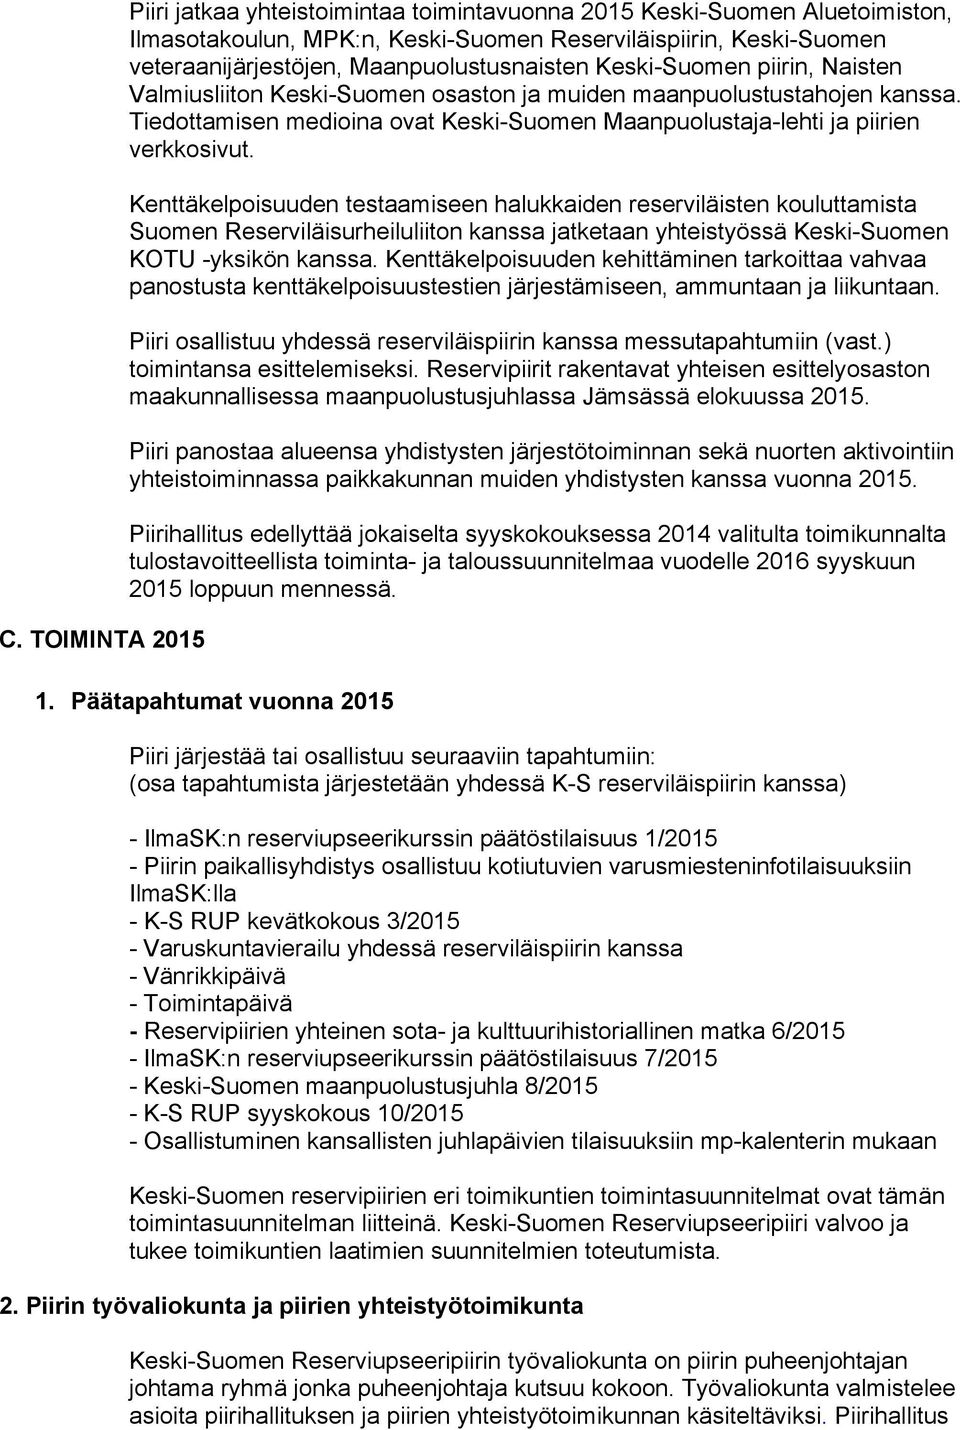 Tiedottamisen medioina ovat Keski-Suomen Maanpuolustaja-lehti ja piirien verkkosivut.